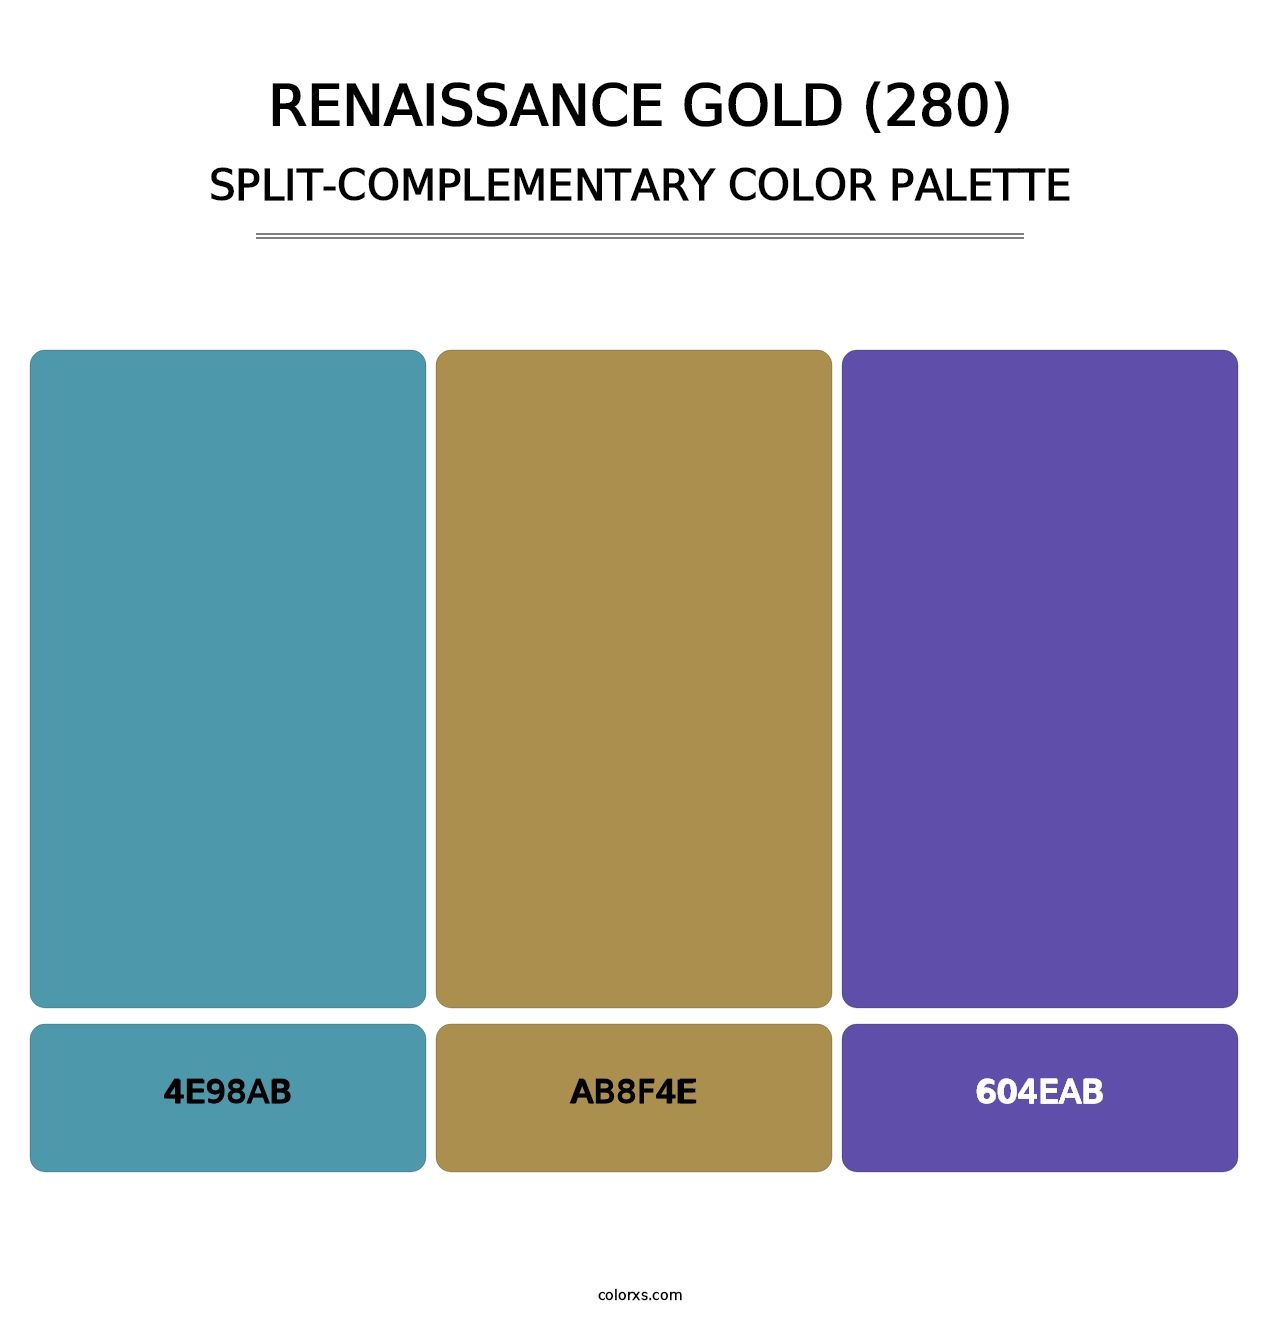 Renaissance Gold (280) - Split-Complementary Color Palette